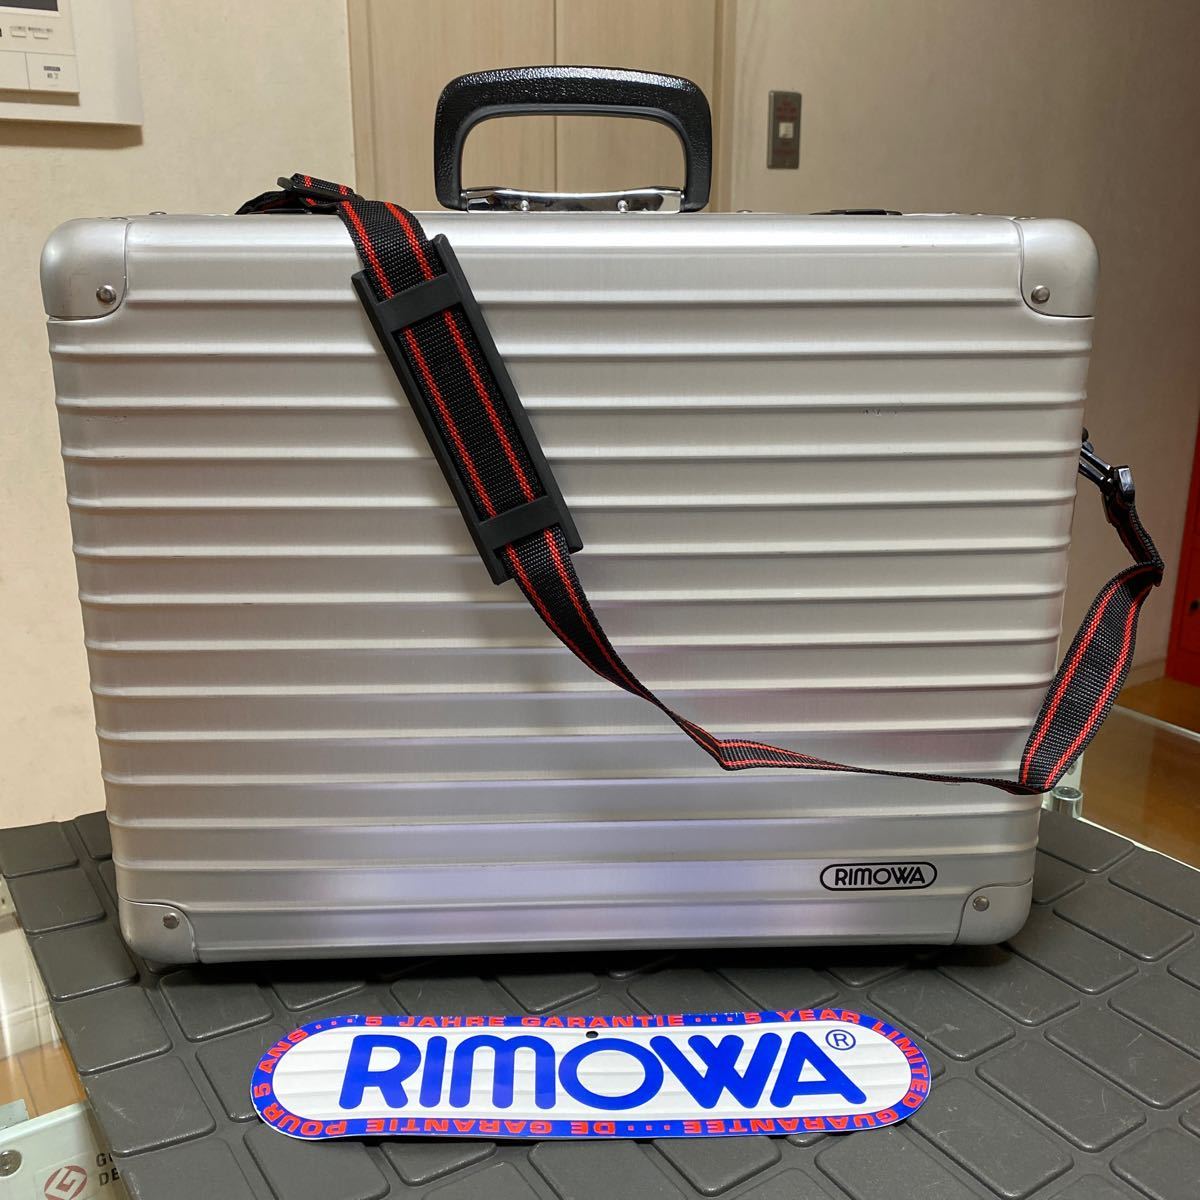  records out of production / rare / rare [RIMOWA] Rimowa attache case camera case trunk case aluminium duralumin case Vintage / Old Rimowa 